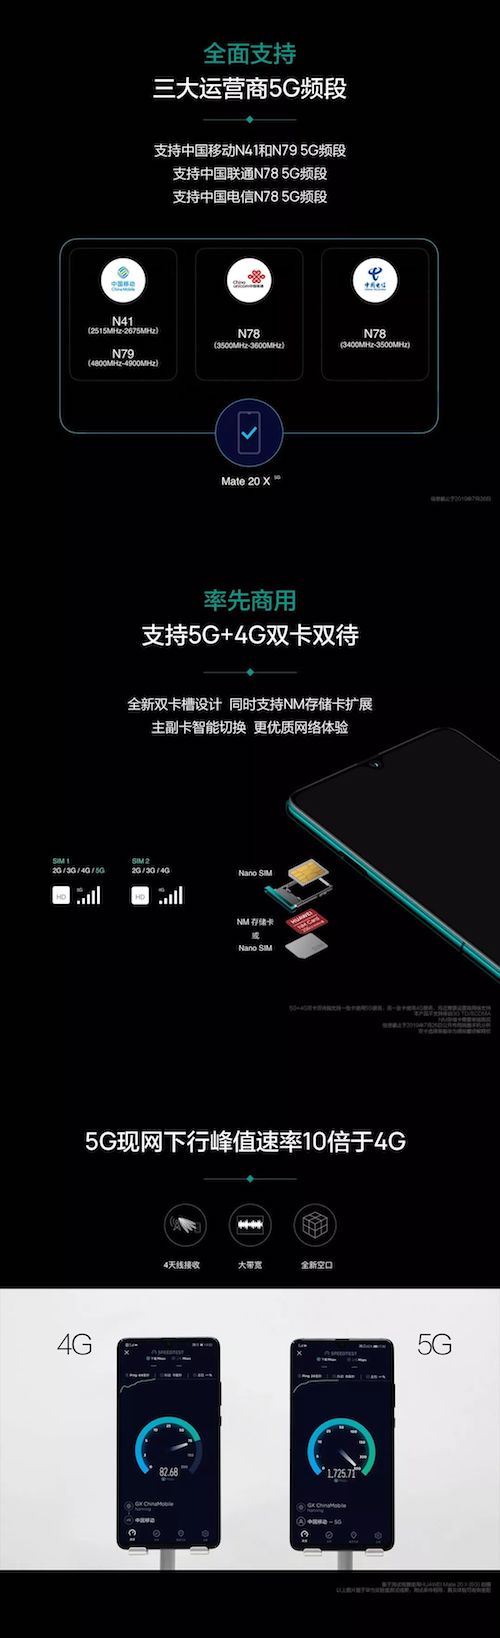 华为首款5G智能手机来了！Mate20 X 5G版开放预约售价6199元